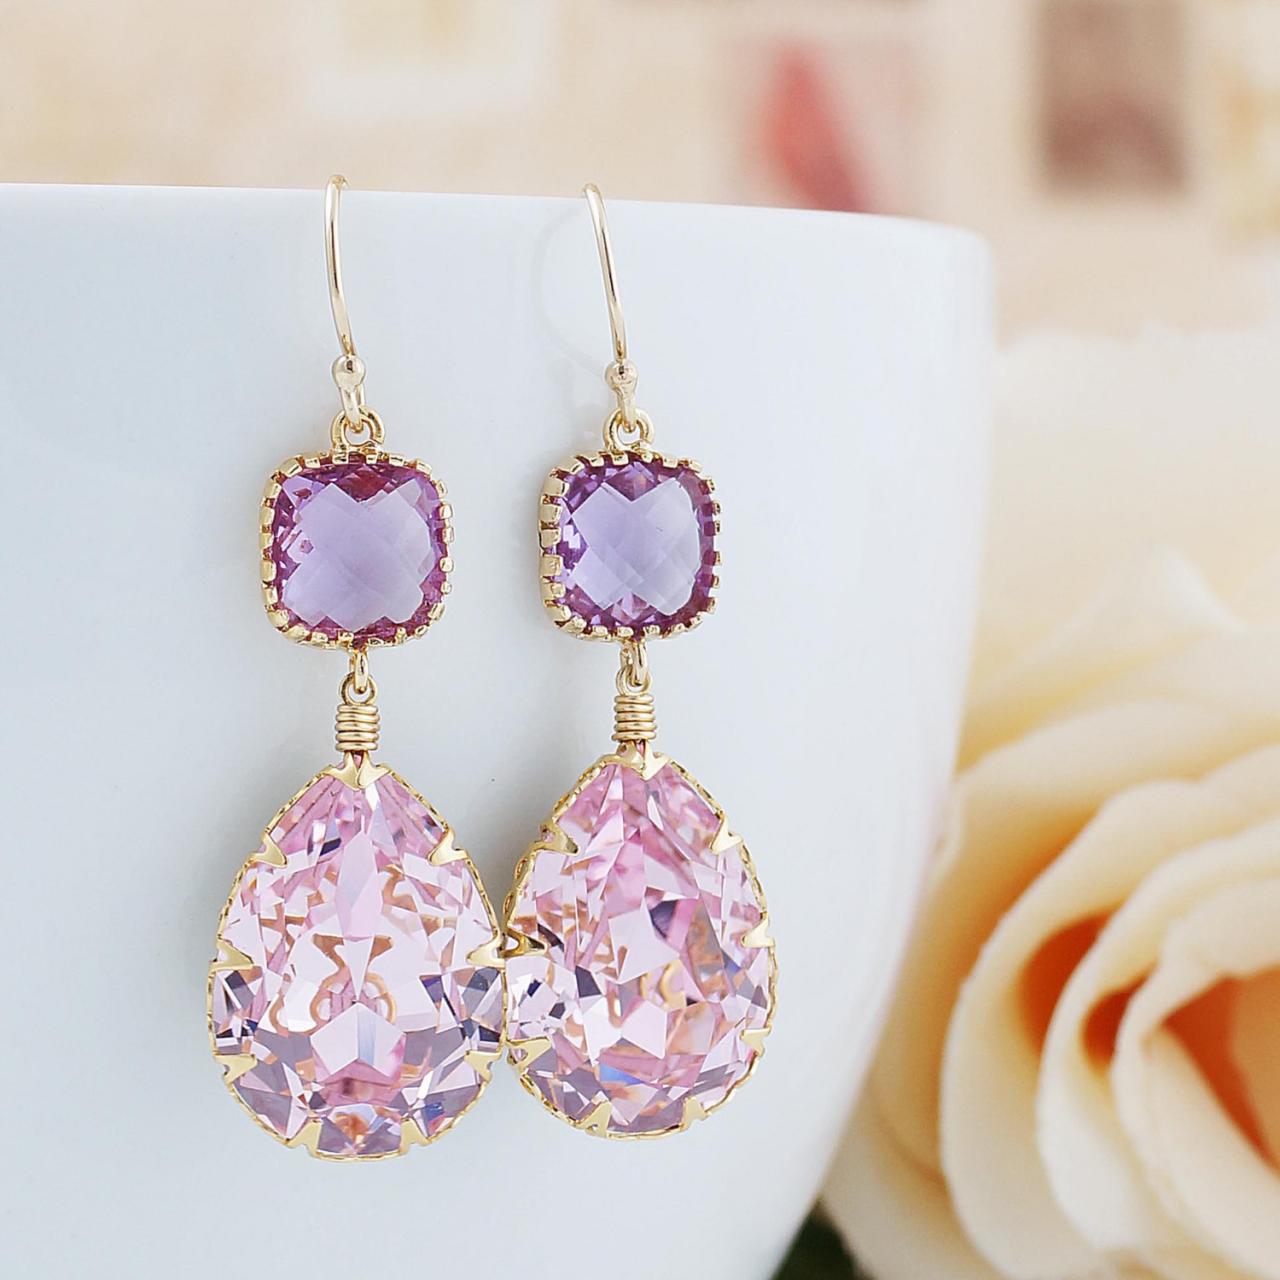 Rosaline Pink Swarovski Crystal Gold Filled Earrings - Dangle Earrings Pastel Earrings Weddings Bridesmaid Jewelry Bridesmaid Gift